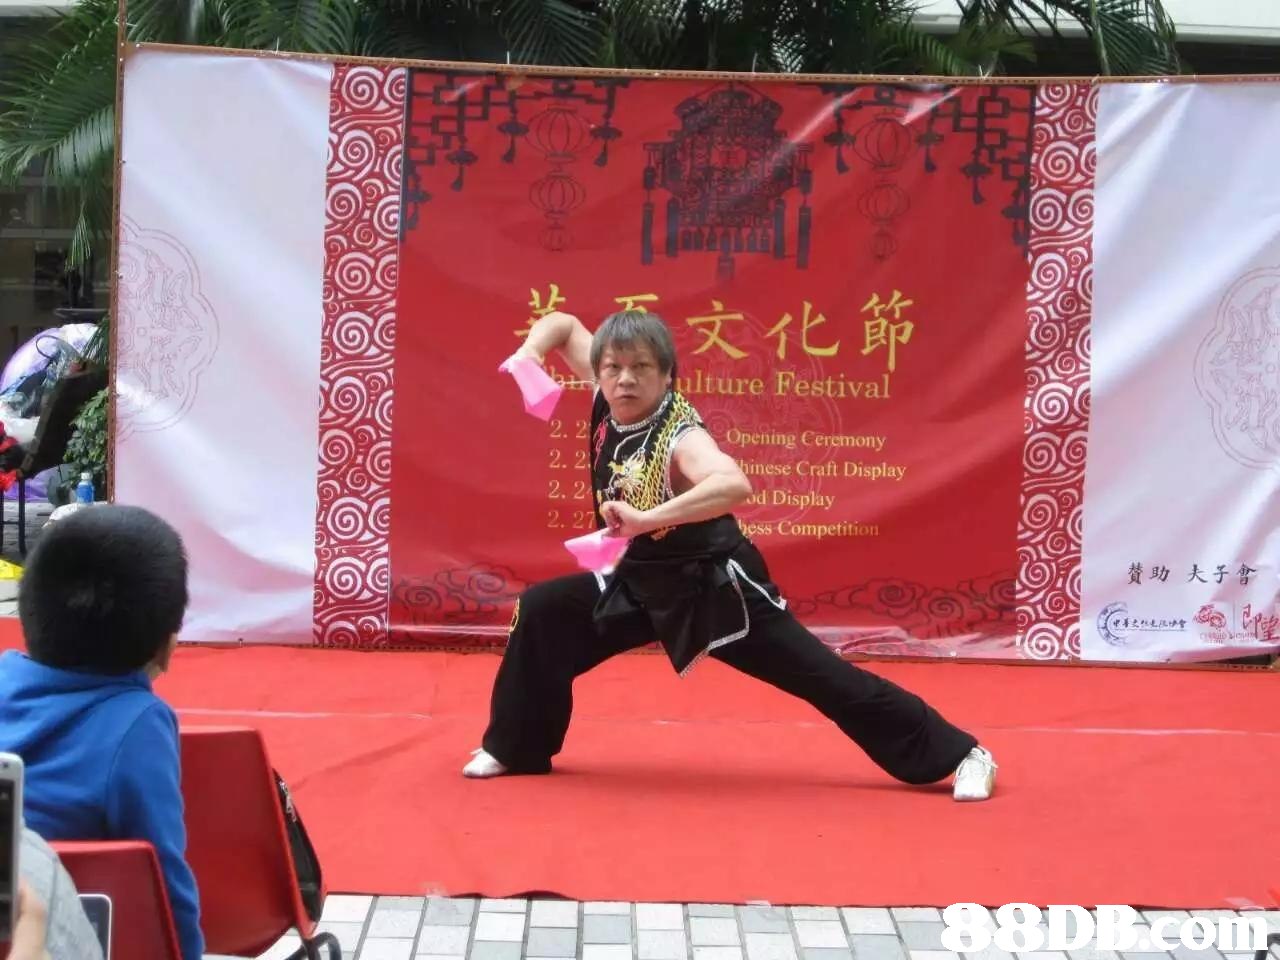 不文化節 ulture Festival Opening Cercmony 2. 2 2. 2 2. 27 binese Craft Display od Display ss Competition] 贊助大于  Kung fu,Kung fu,Martial arts,Wushu,Individual sports